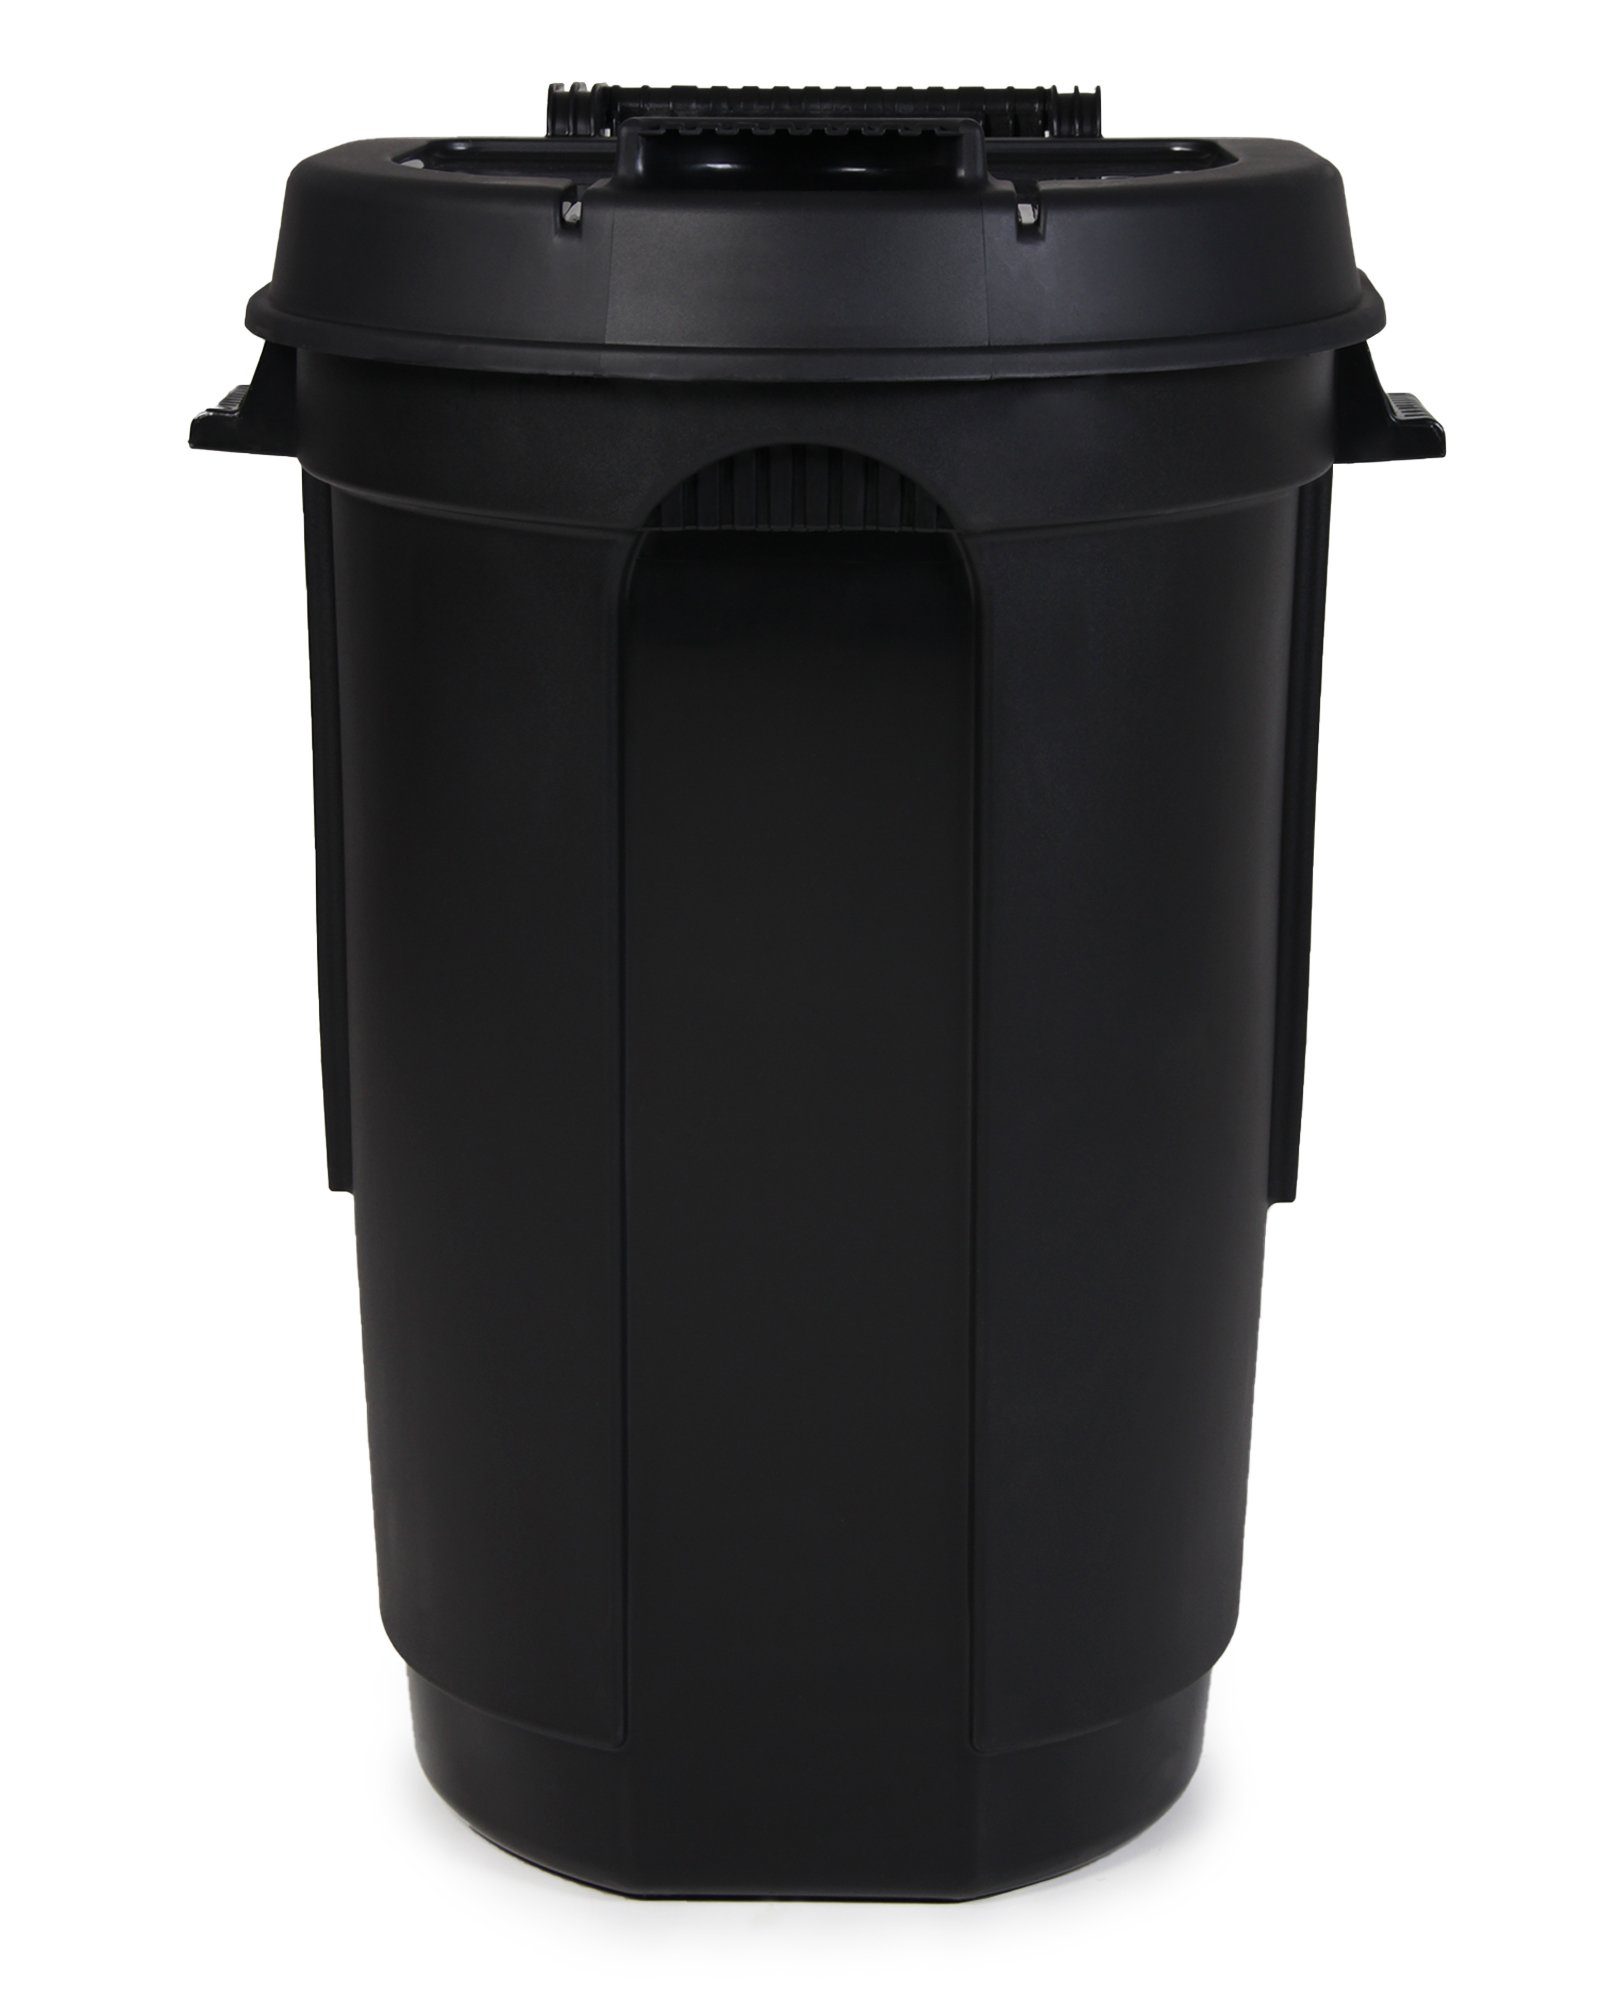 ONDIS24 Mülleimer Gartentonne mit 2 Rädern, Mülltonne 110 Liter Volumen, Abfalltonne mit weit öffnendem Deckel, Outdoor Mülleimer